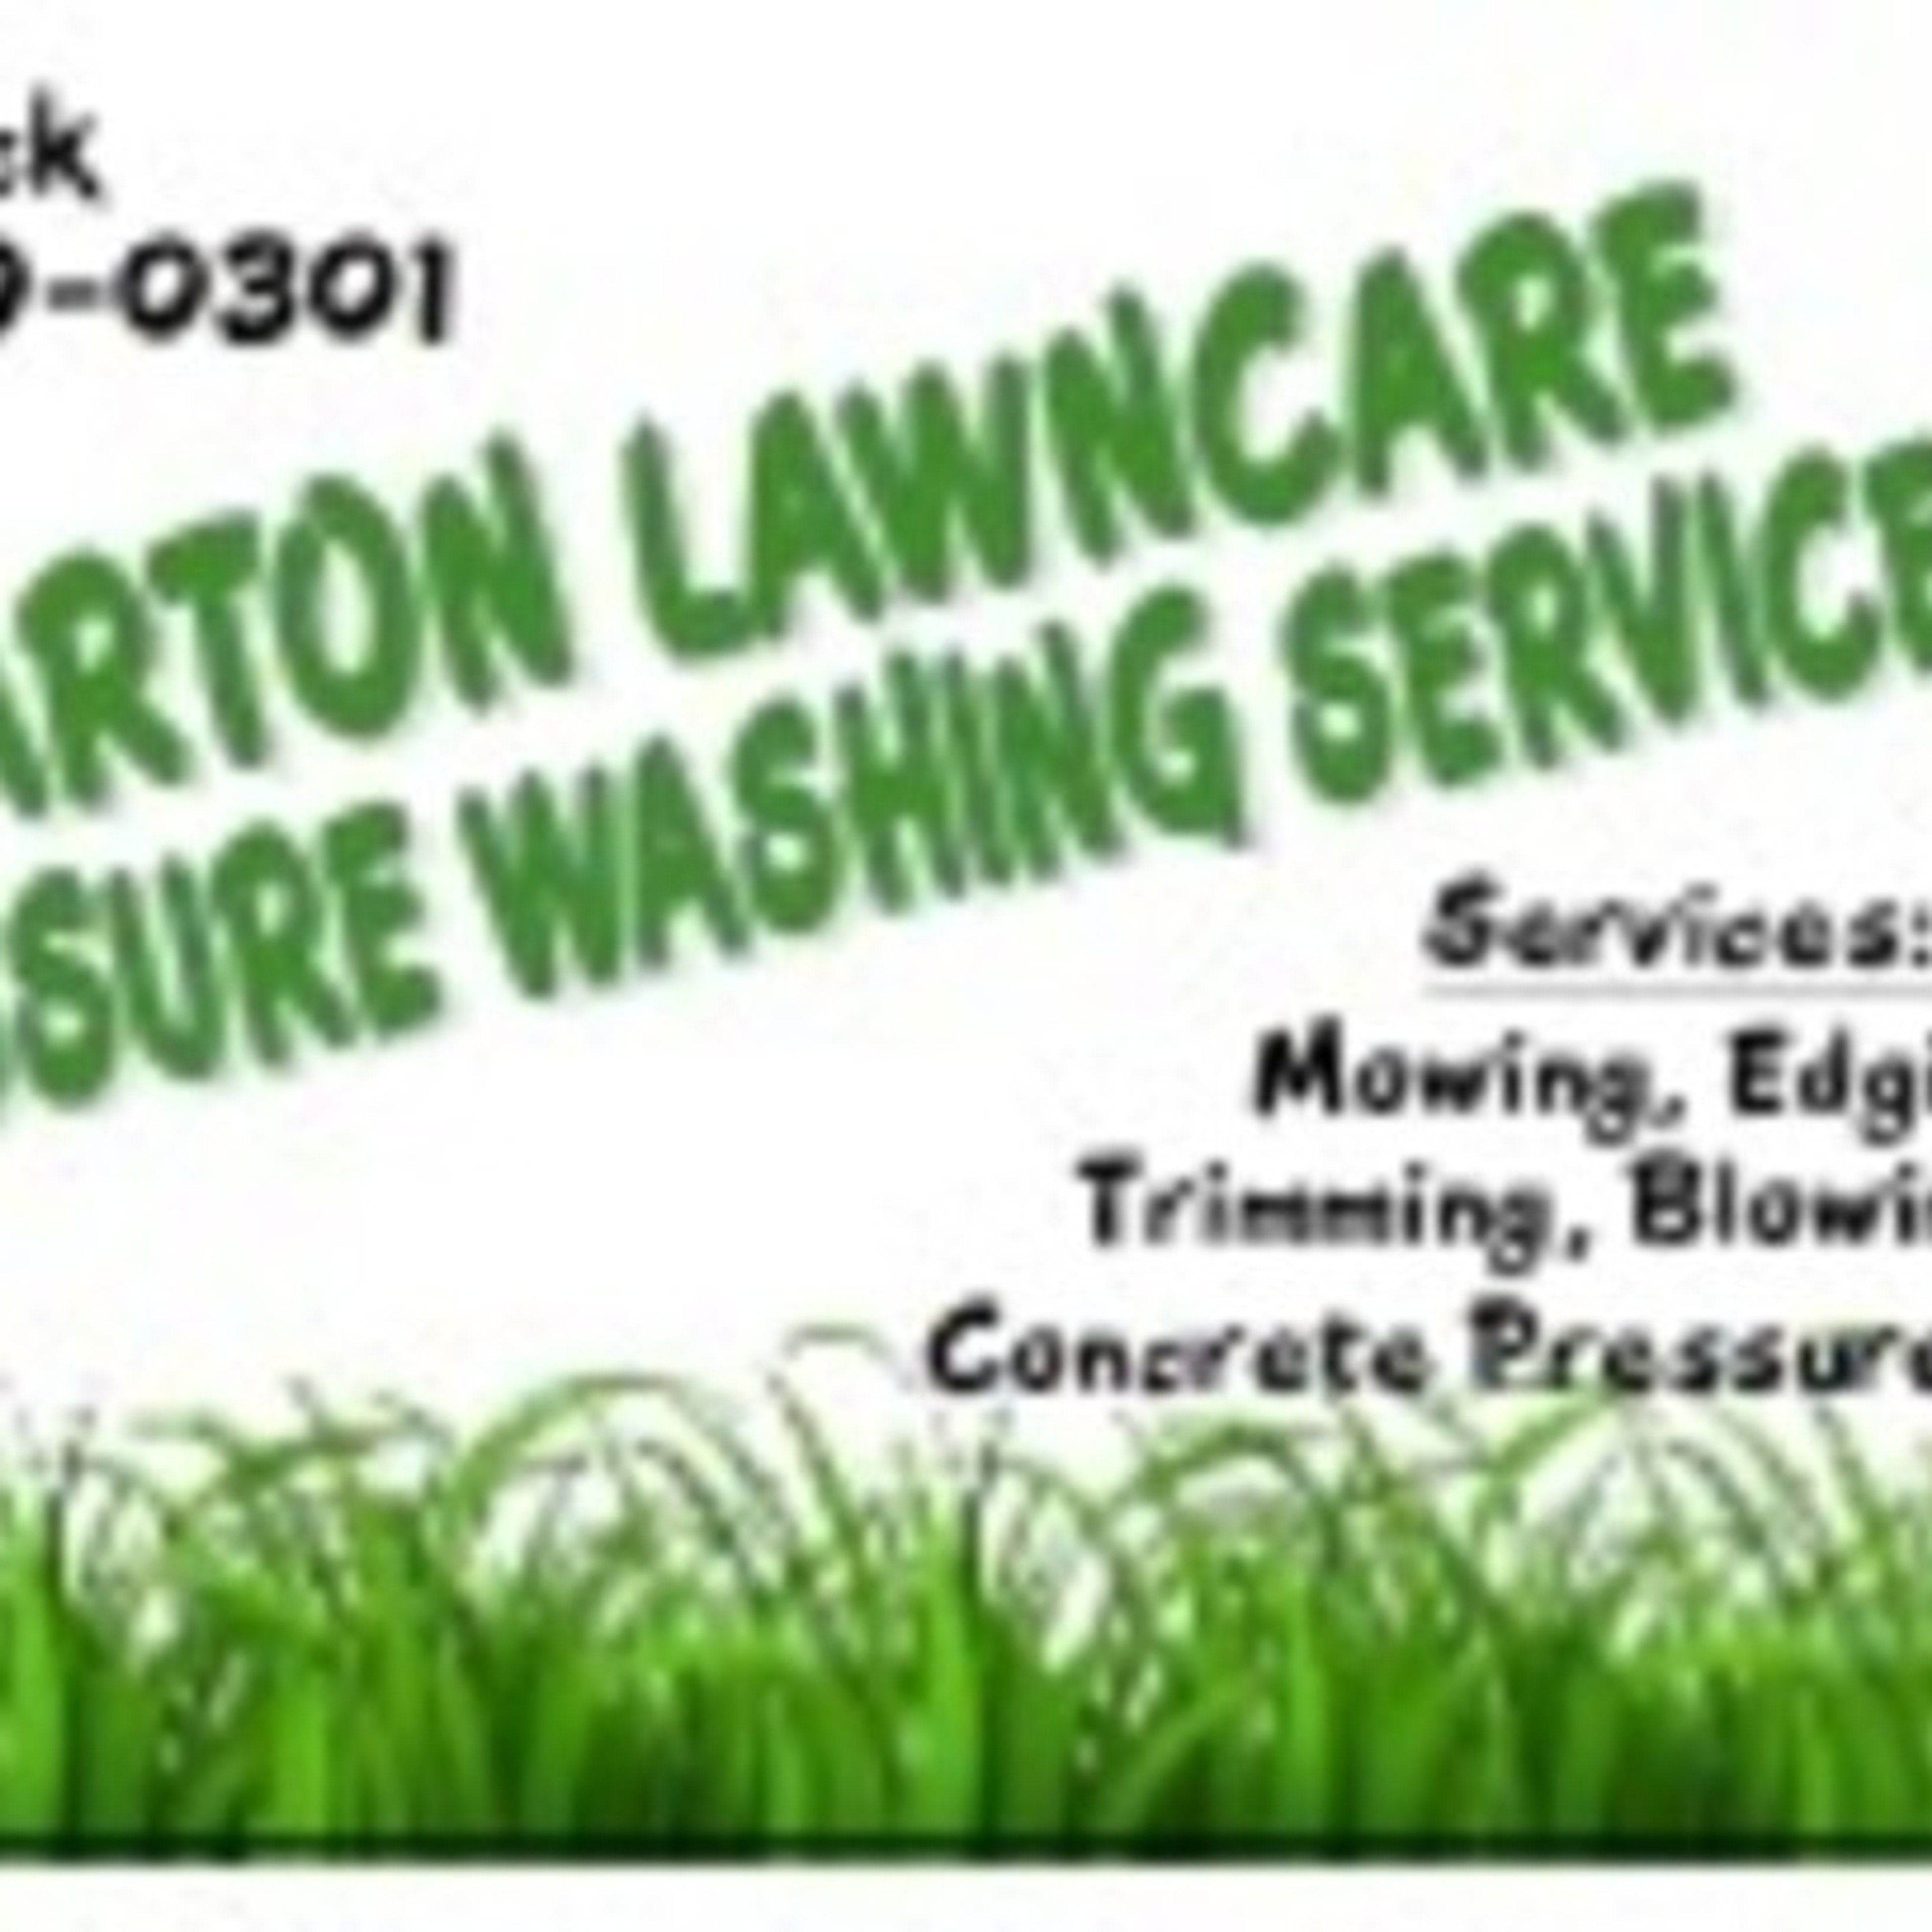 Barton lawncare services